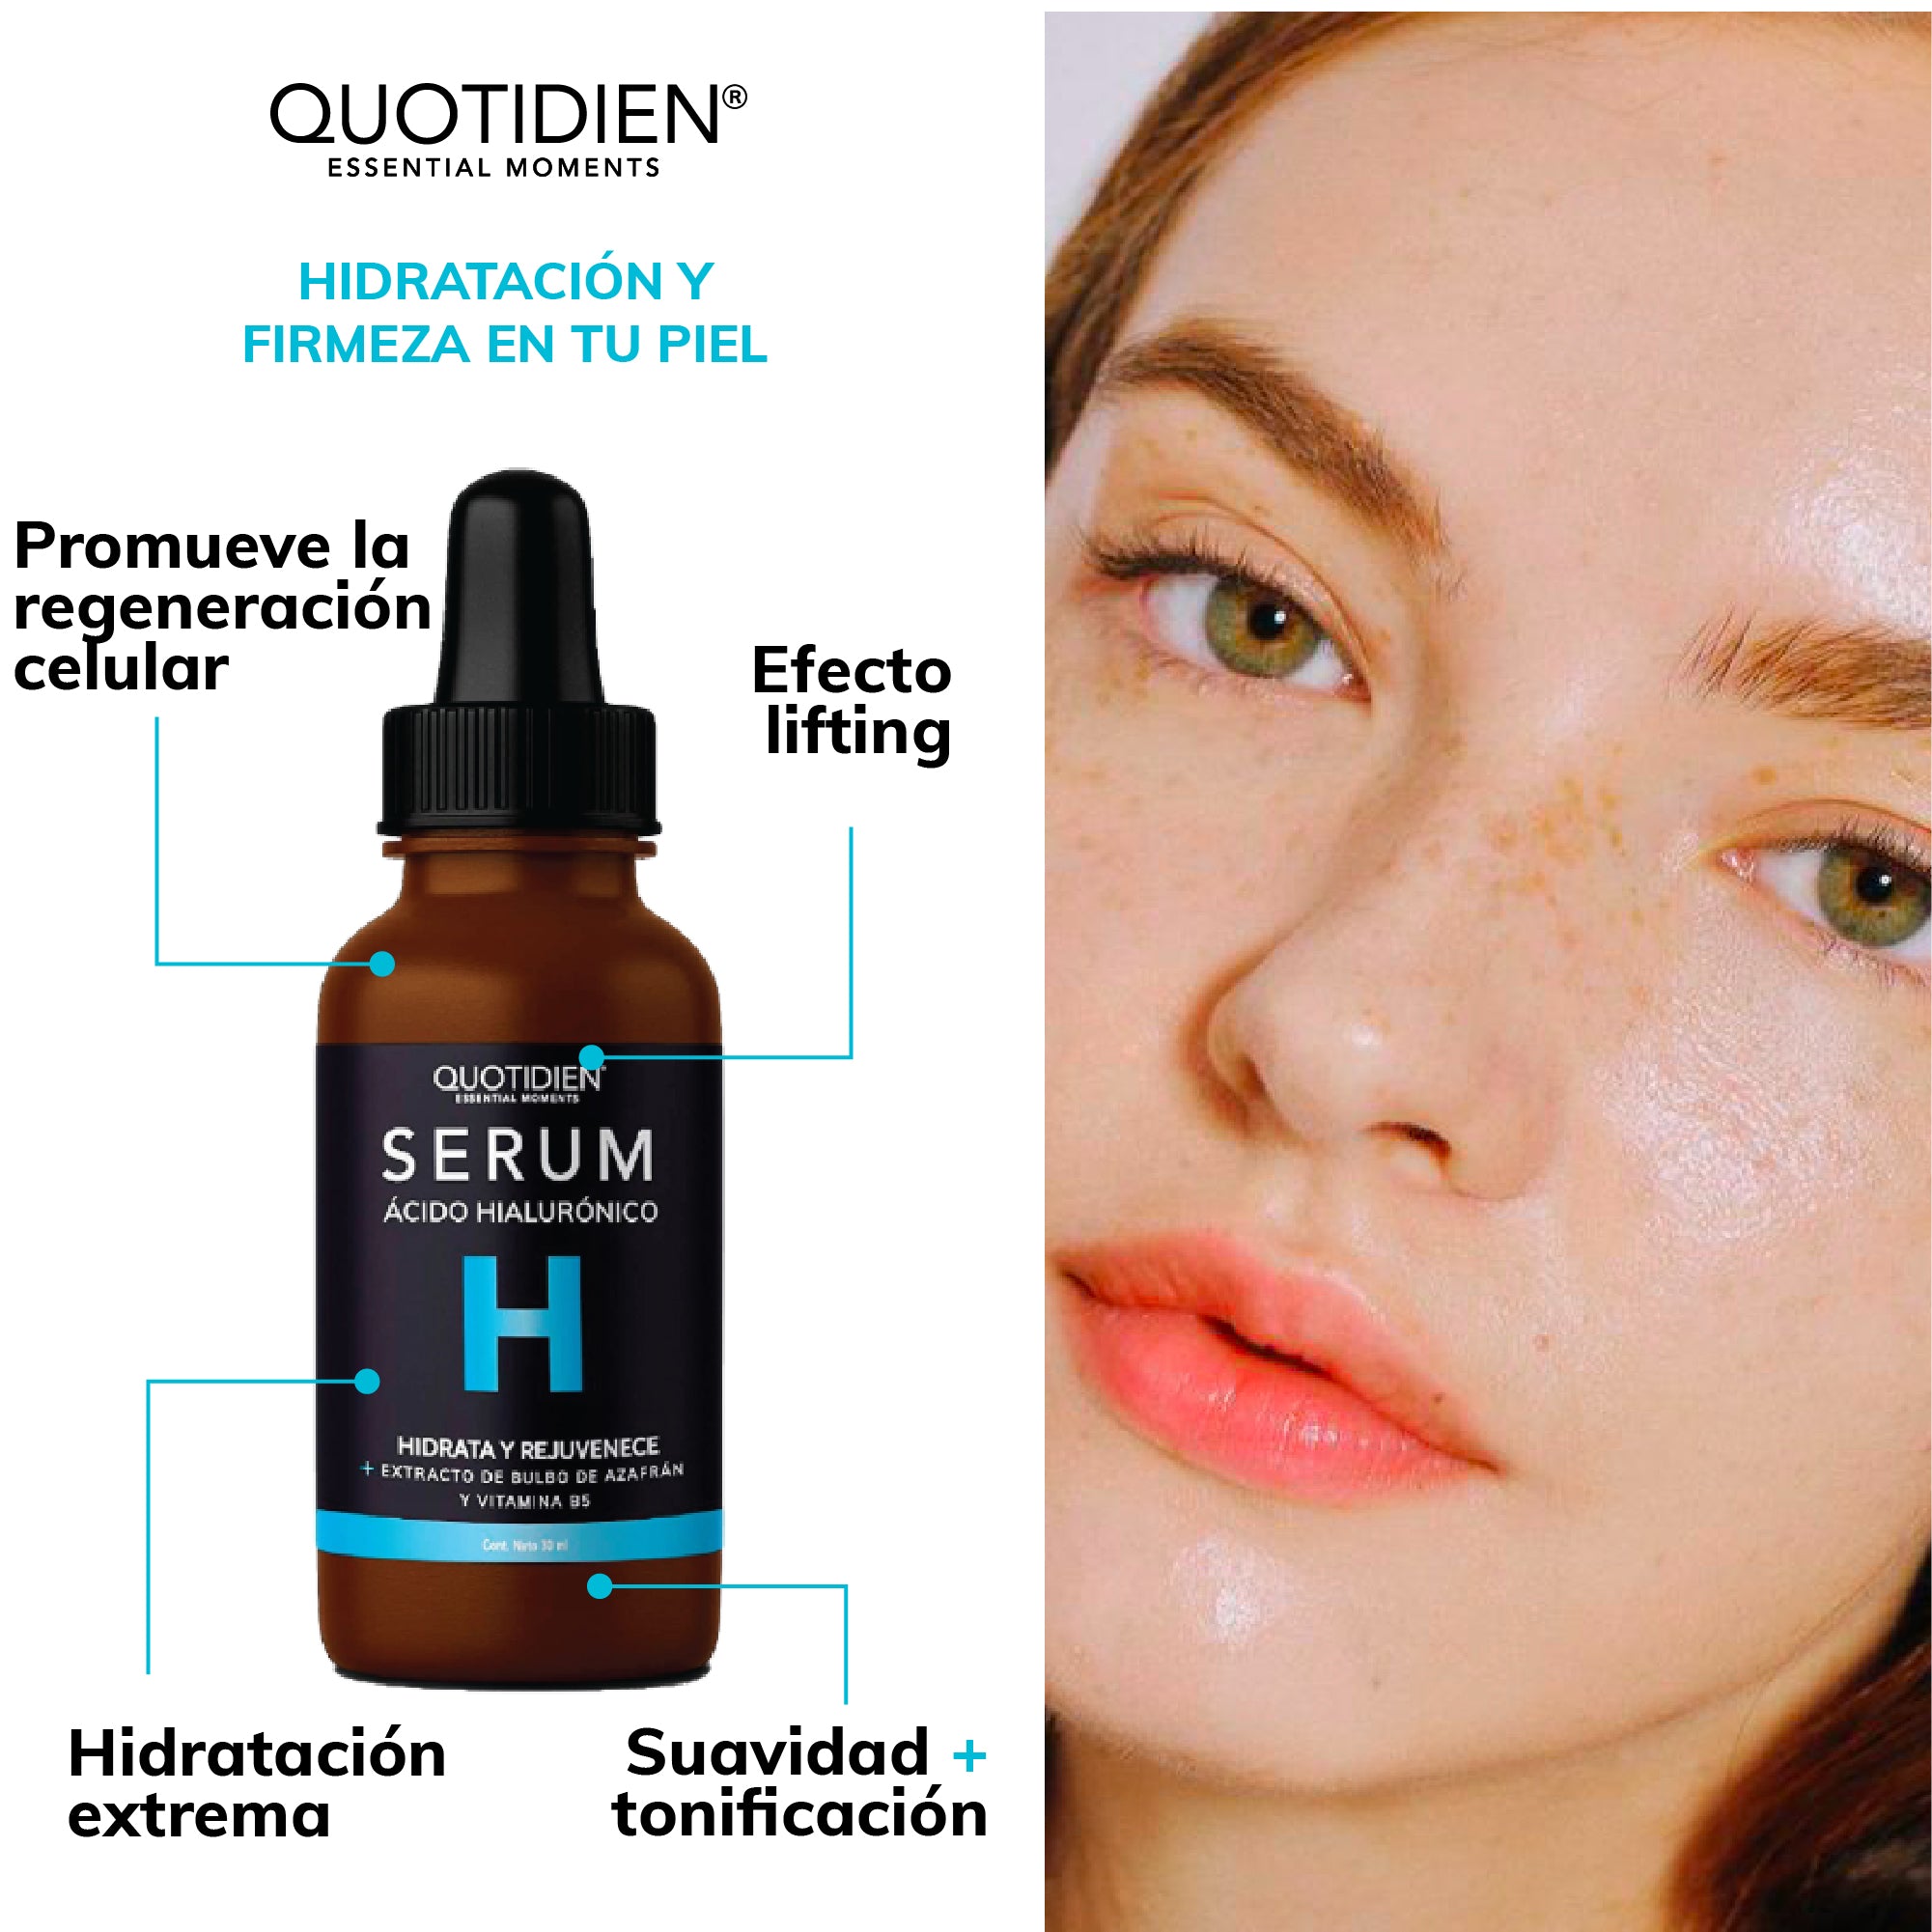 Kit Piel Radiante (51% OFF) - Limpiador Facial + Tónico Facial + Serum de Vitamina C + Serum de Niacinamida + Serum de Ácido Hialurónico